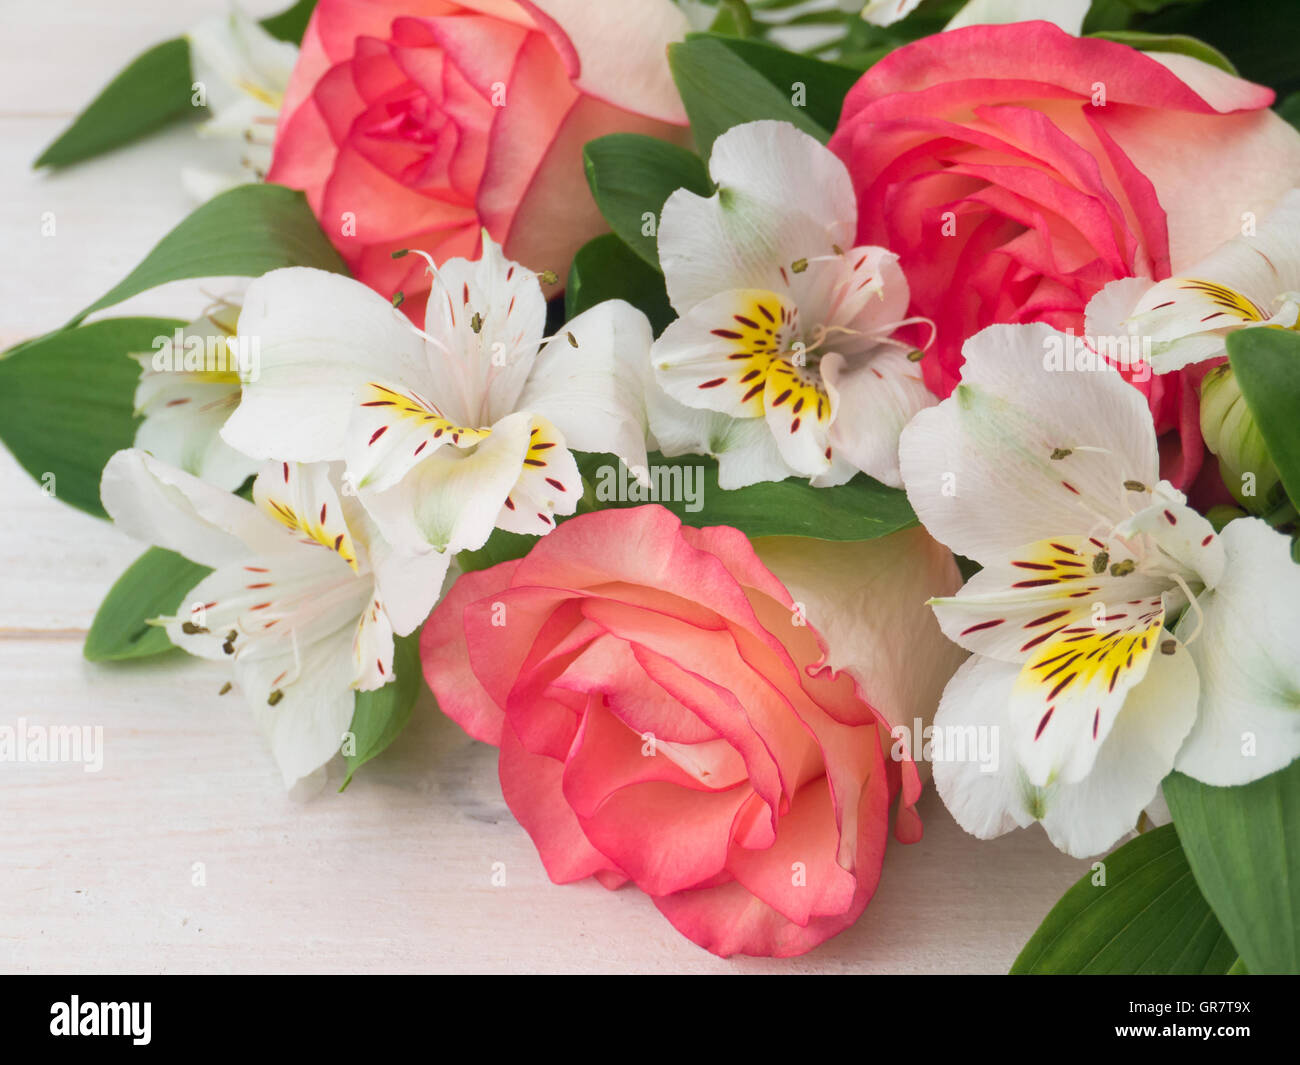 Rose di salmone e delicato alstroemeria bianco mazzetto sul bianco doghe in legno Foto Stock